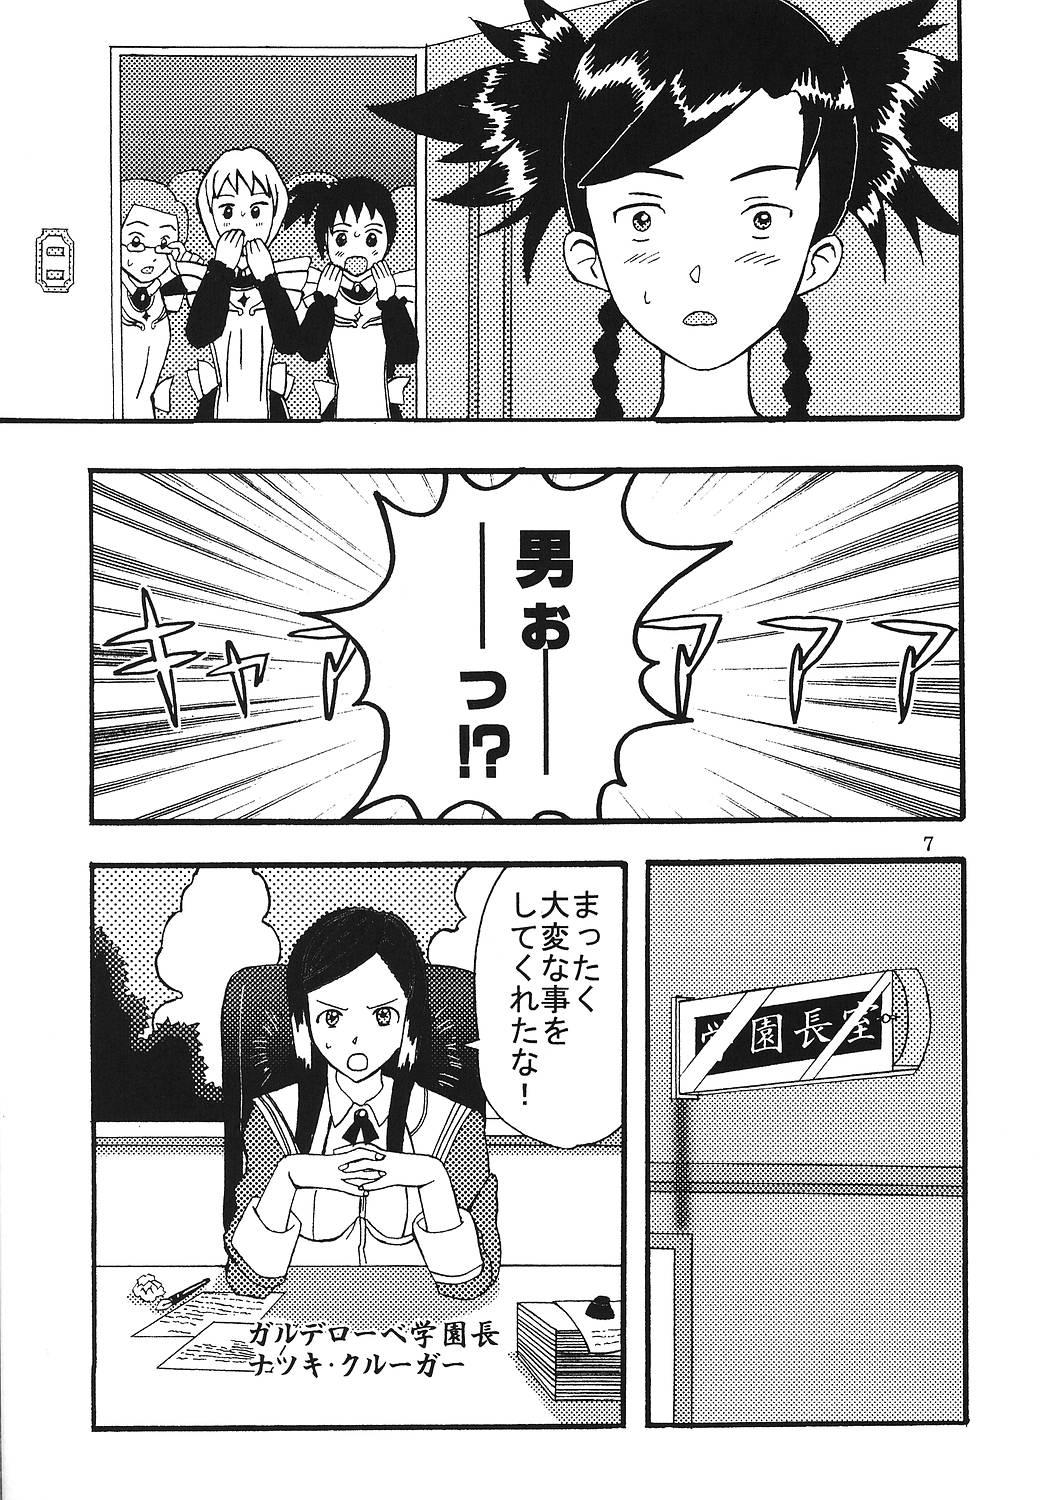 No Condom SUPER COSMIC BREED 3 - Super robot wars Mai-hime Mai-otome Ride - Page 8